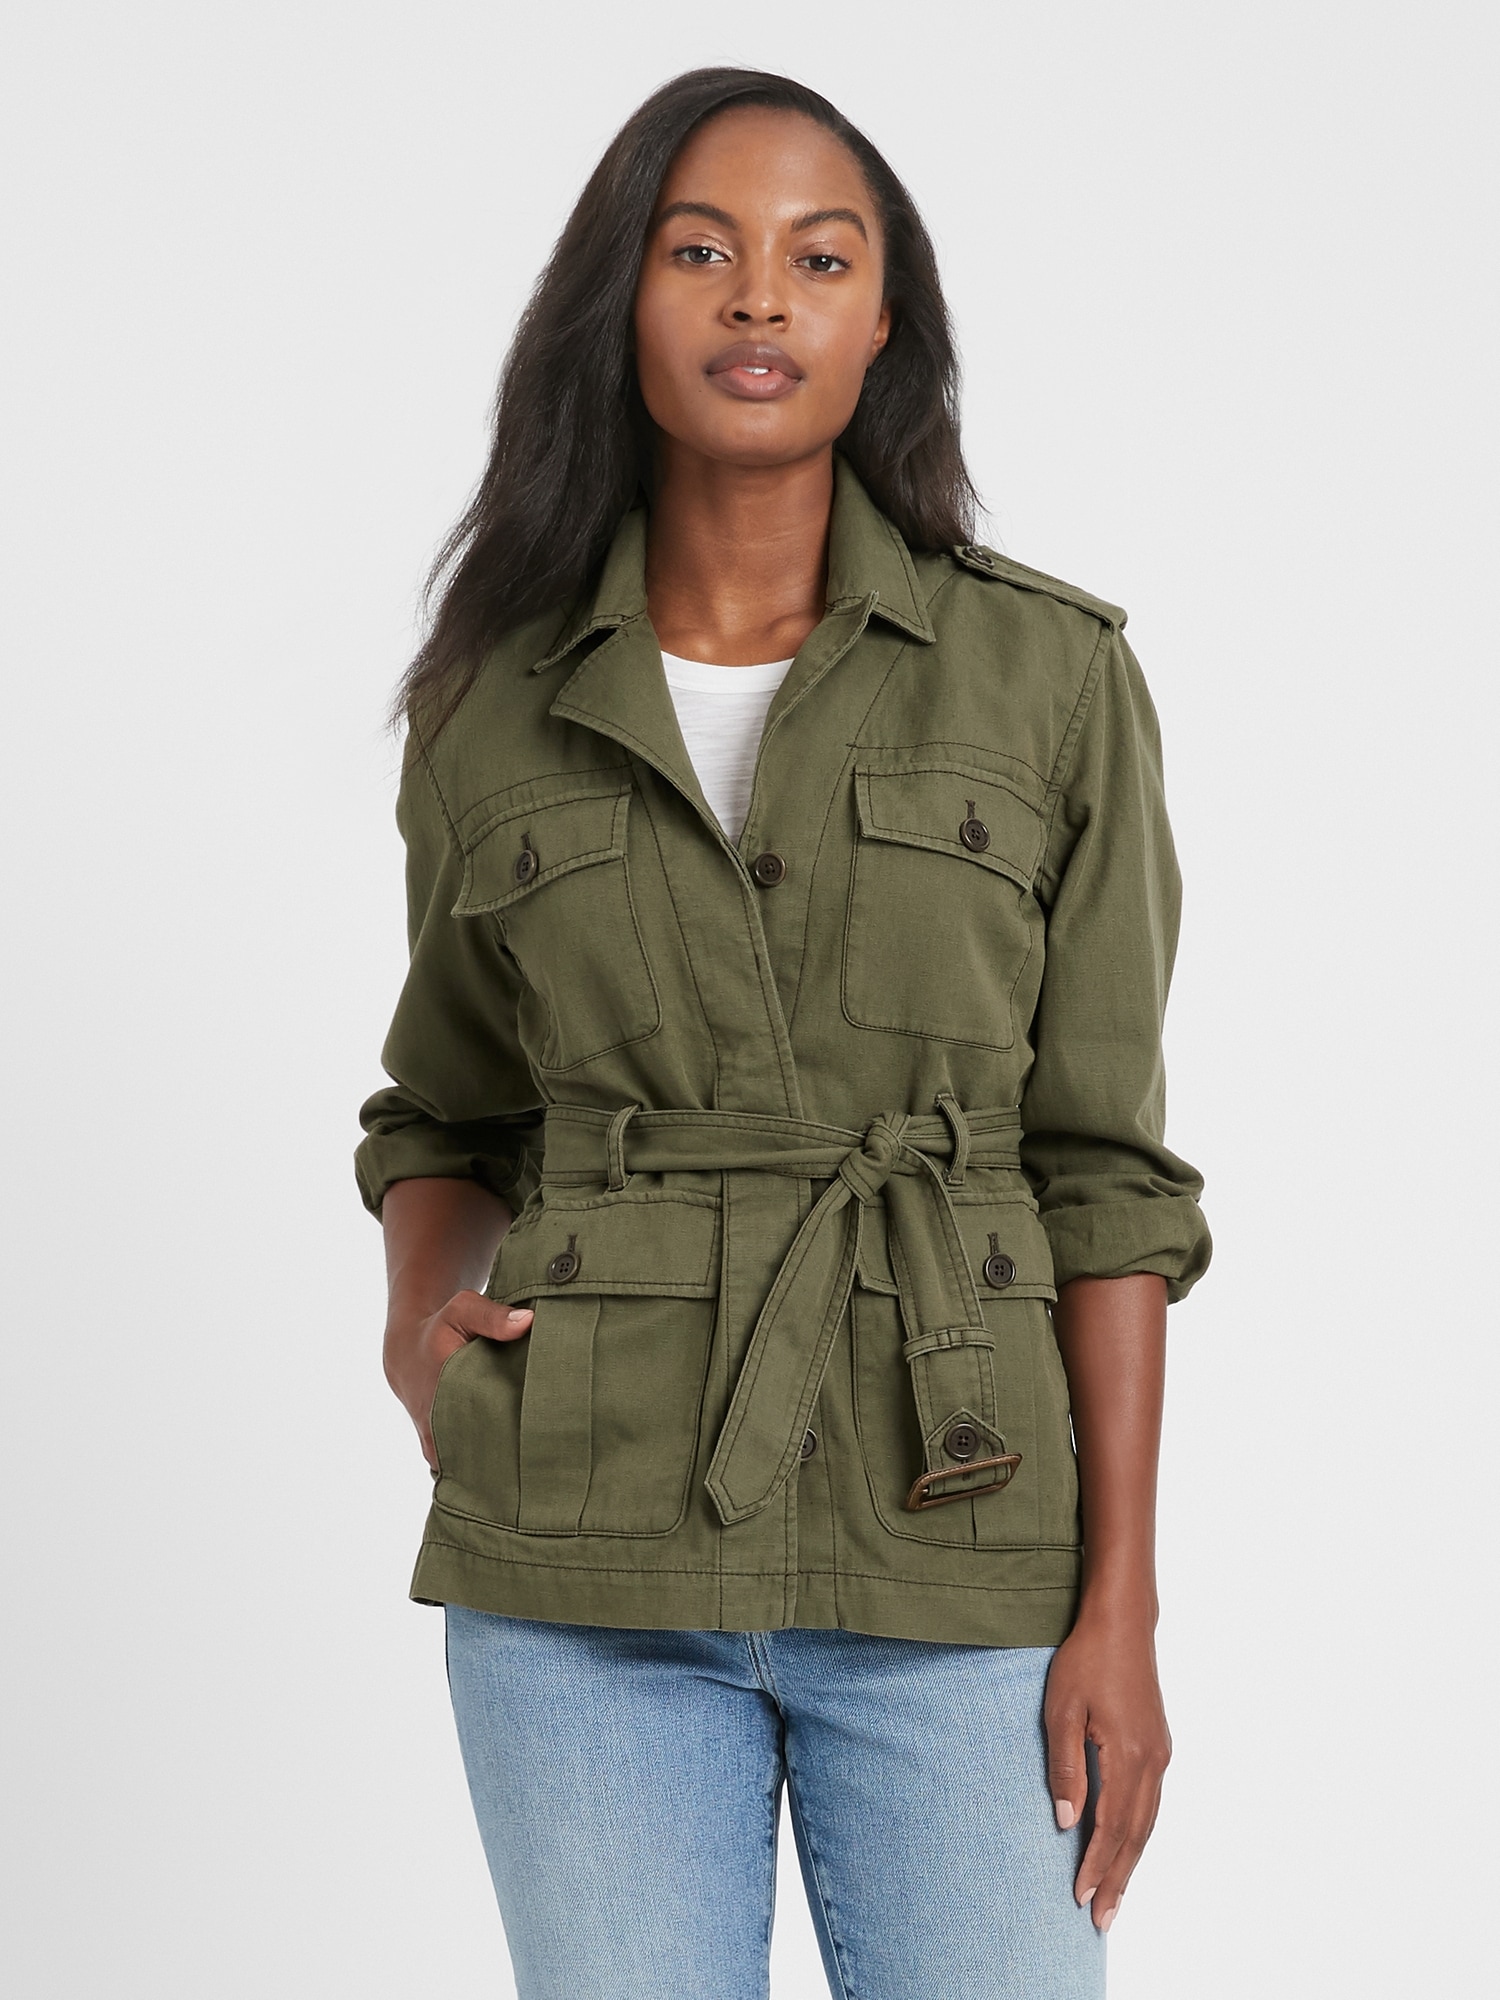 gap safari jacket